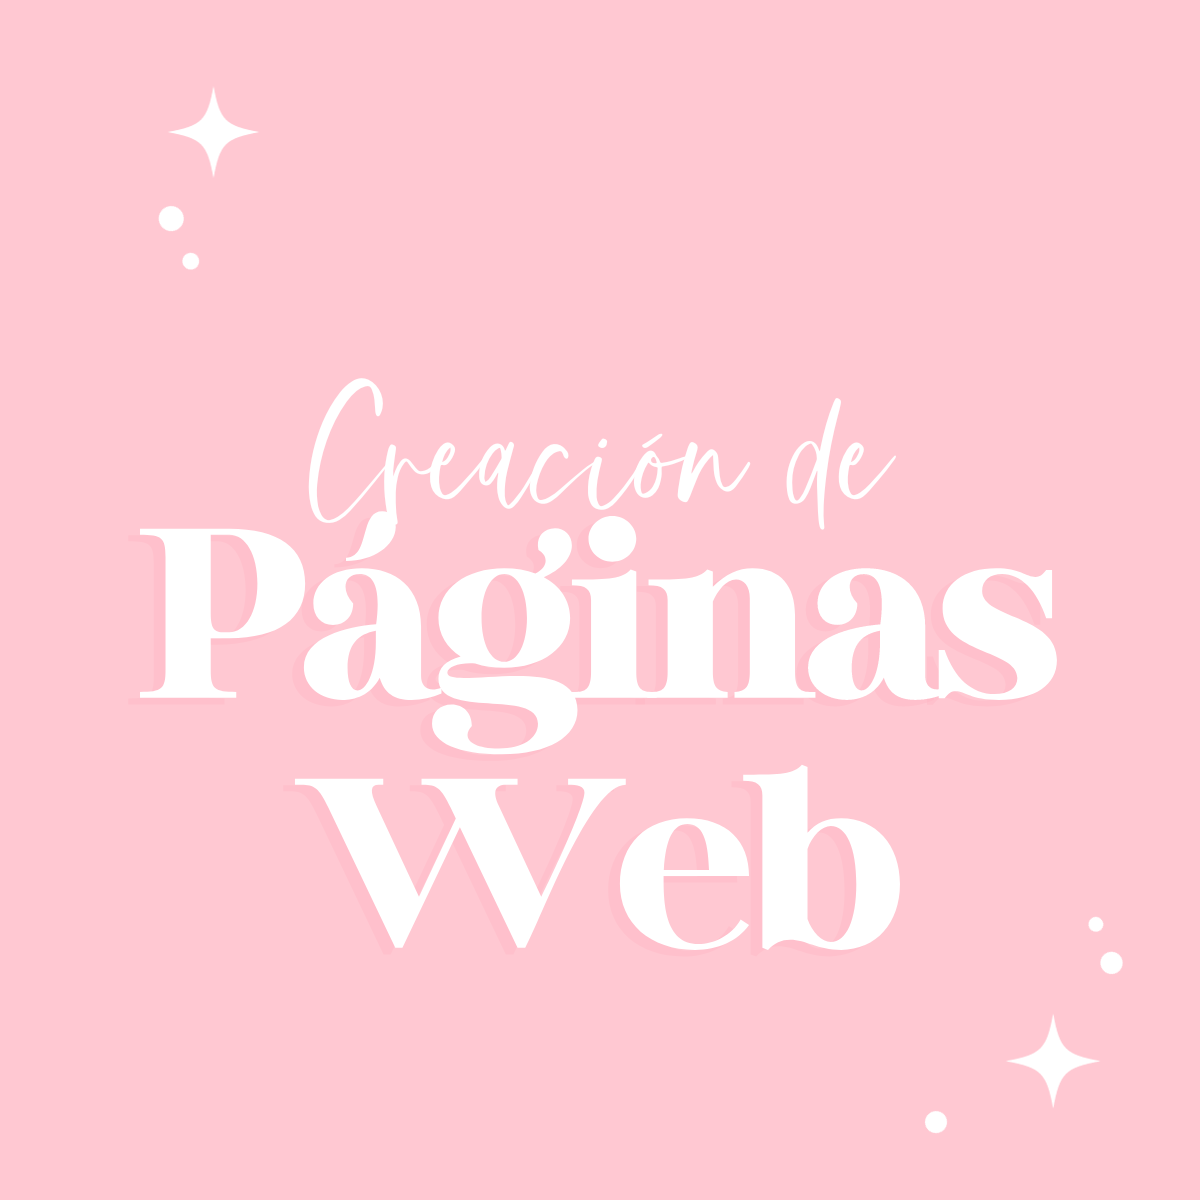 Creación de Páginas Web